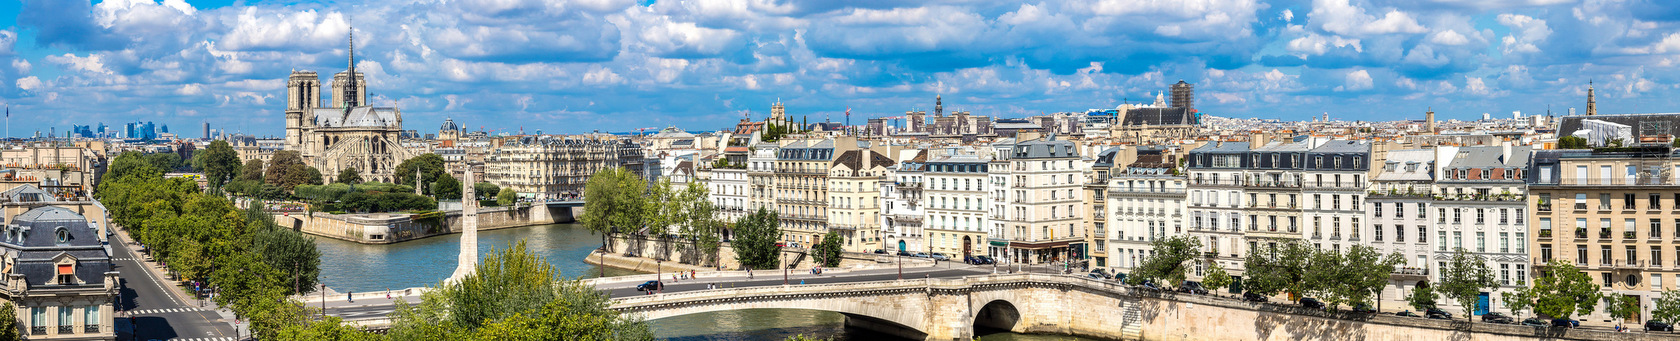 Paryż - interesujące miasto do poznawania języka francuskiego